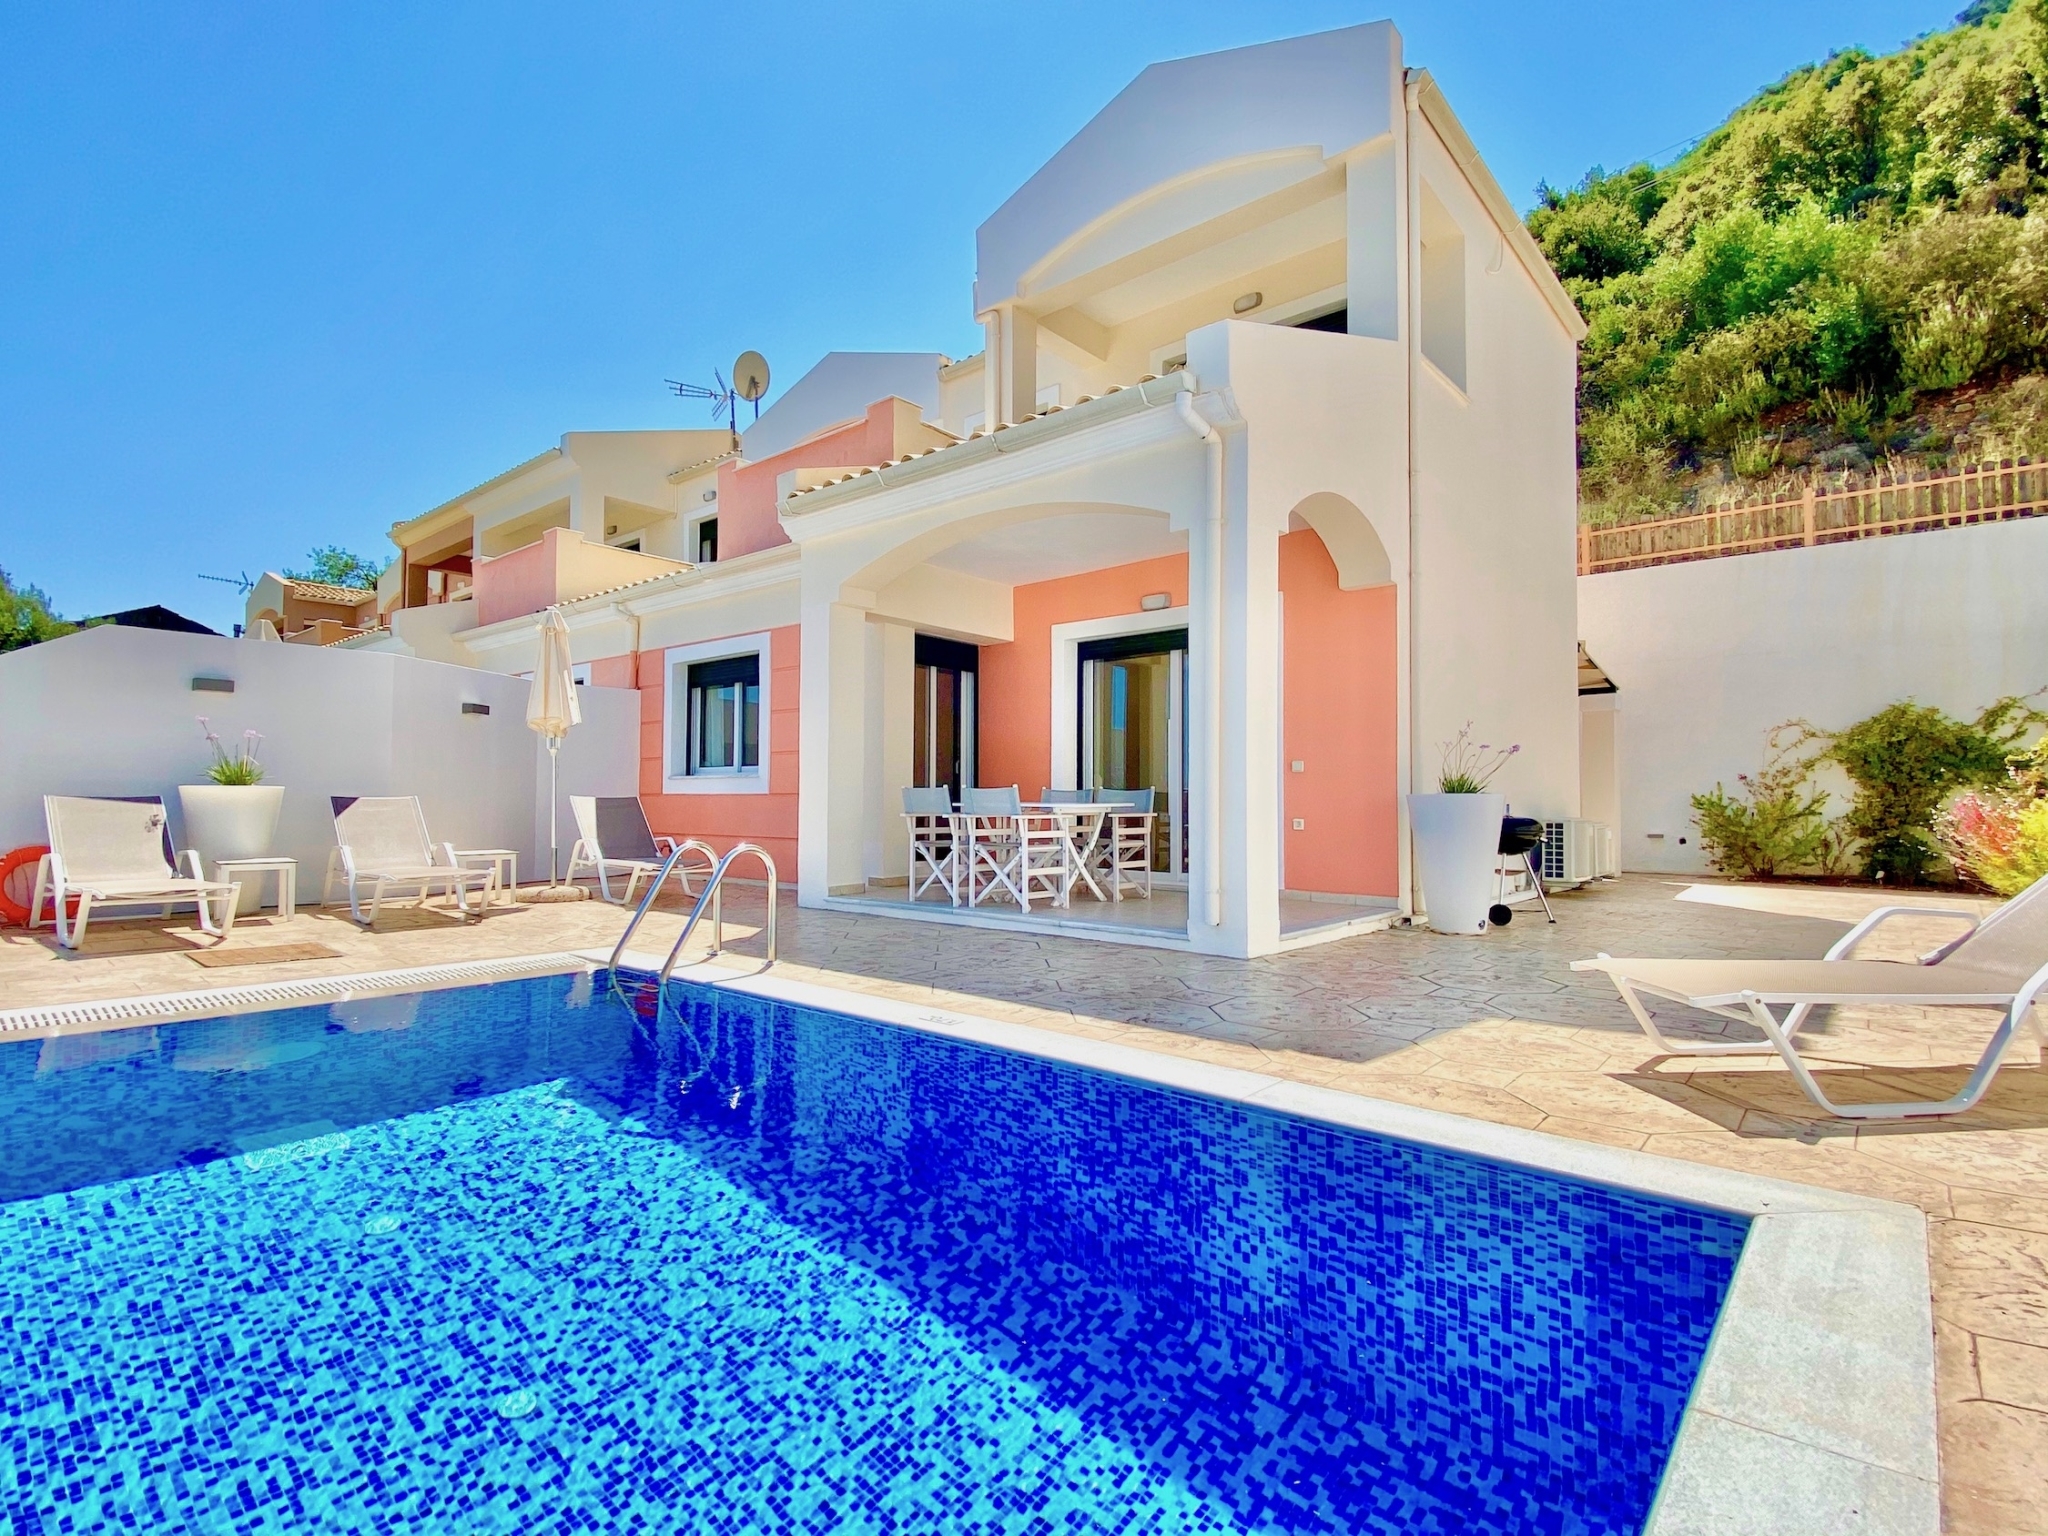 Luxury Villa Akti Barbati 1 with private pool